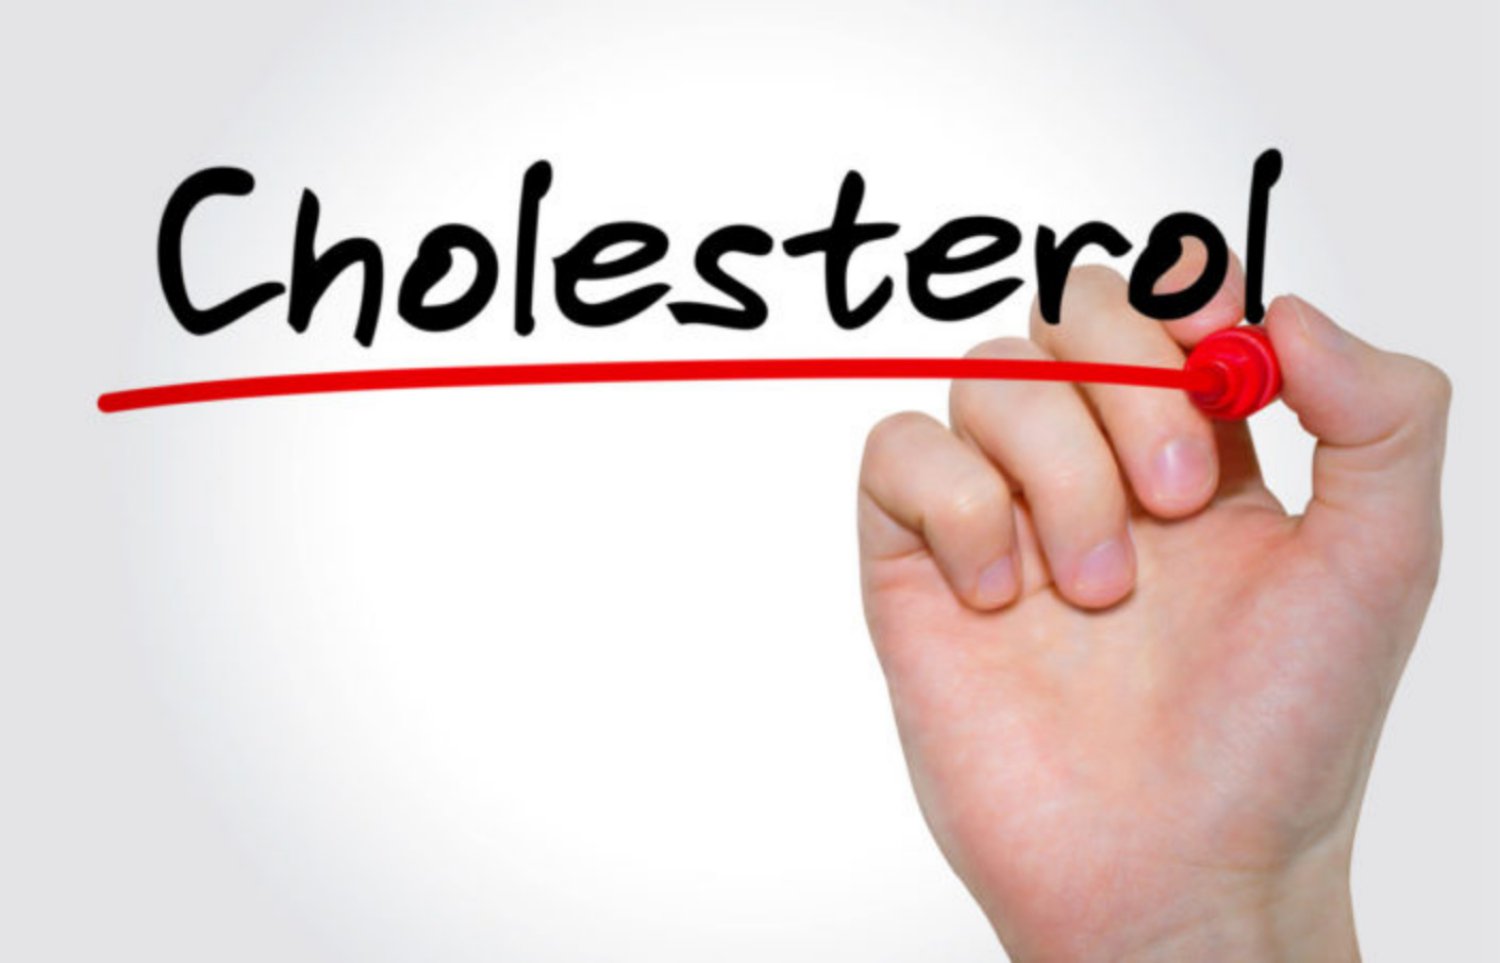 Cholesterone ở nam và nữ khác nhau